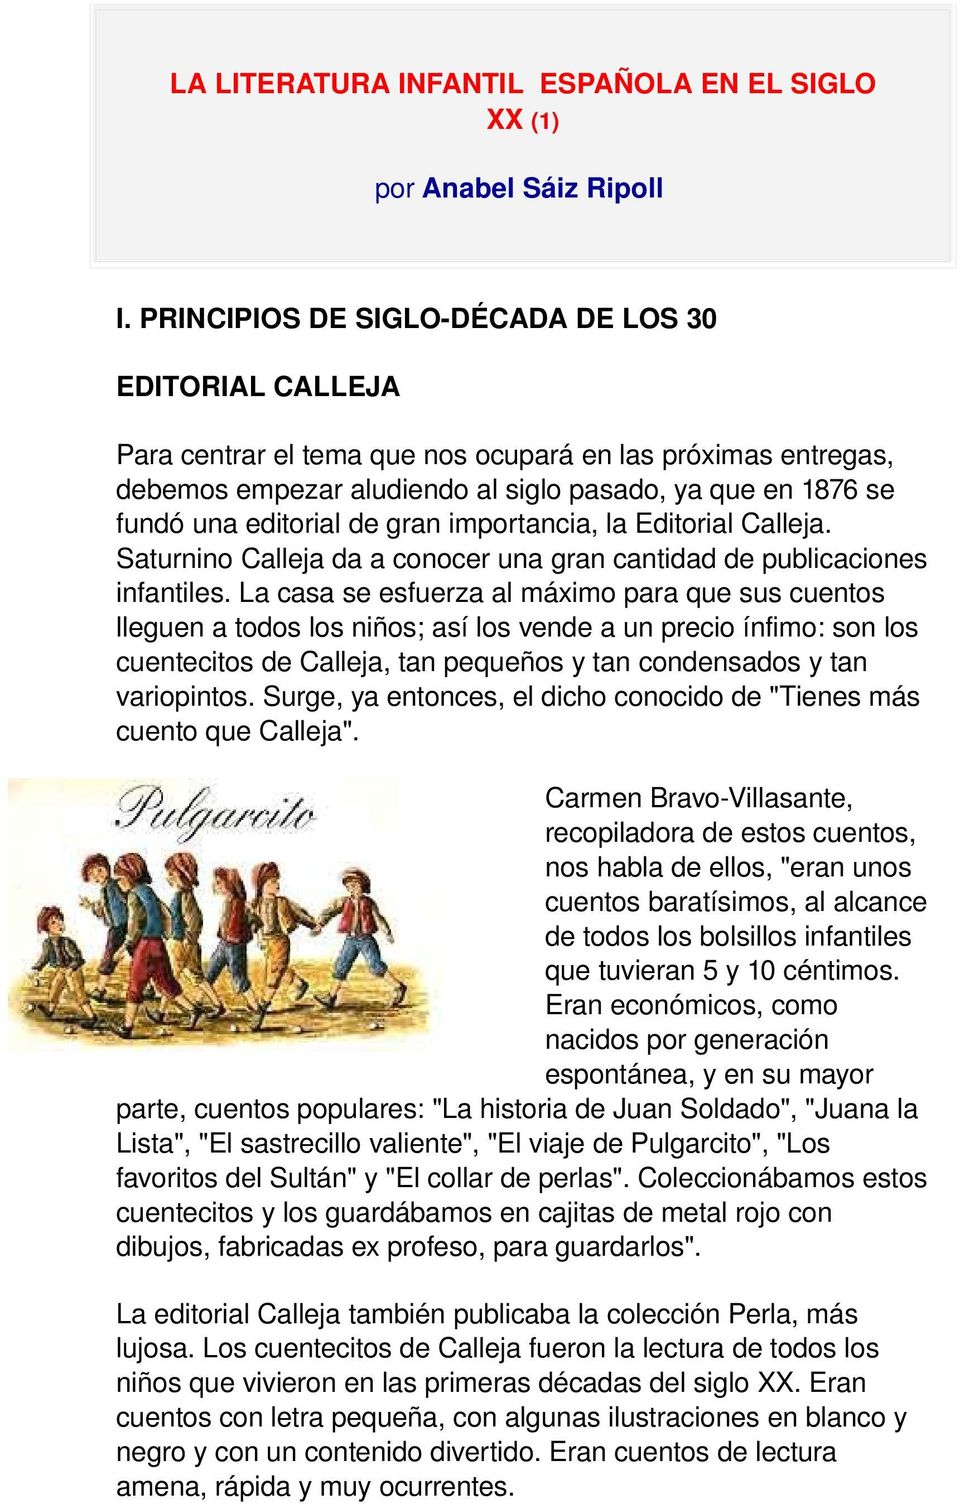 de gran importancia, la Editorial Calleja. Saturnino Calleja da a conocer una gran cantidad de publicaciones infantiles.